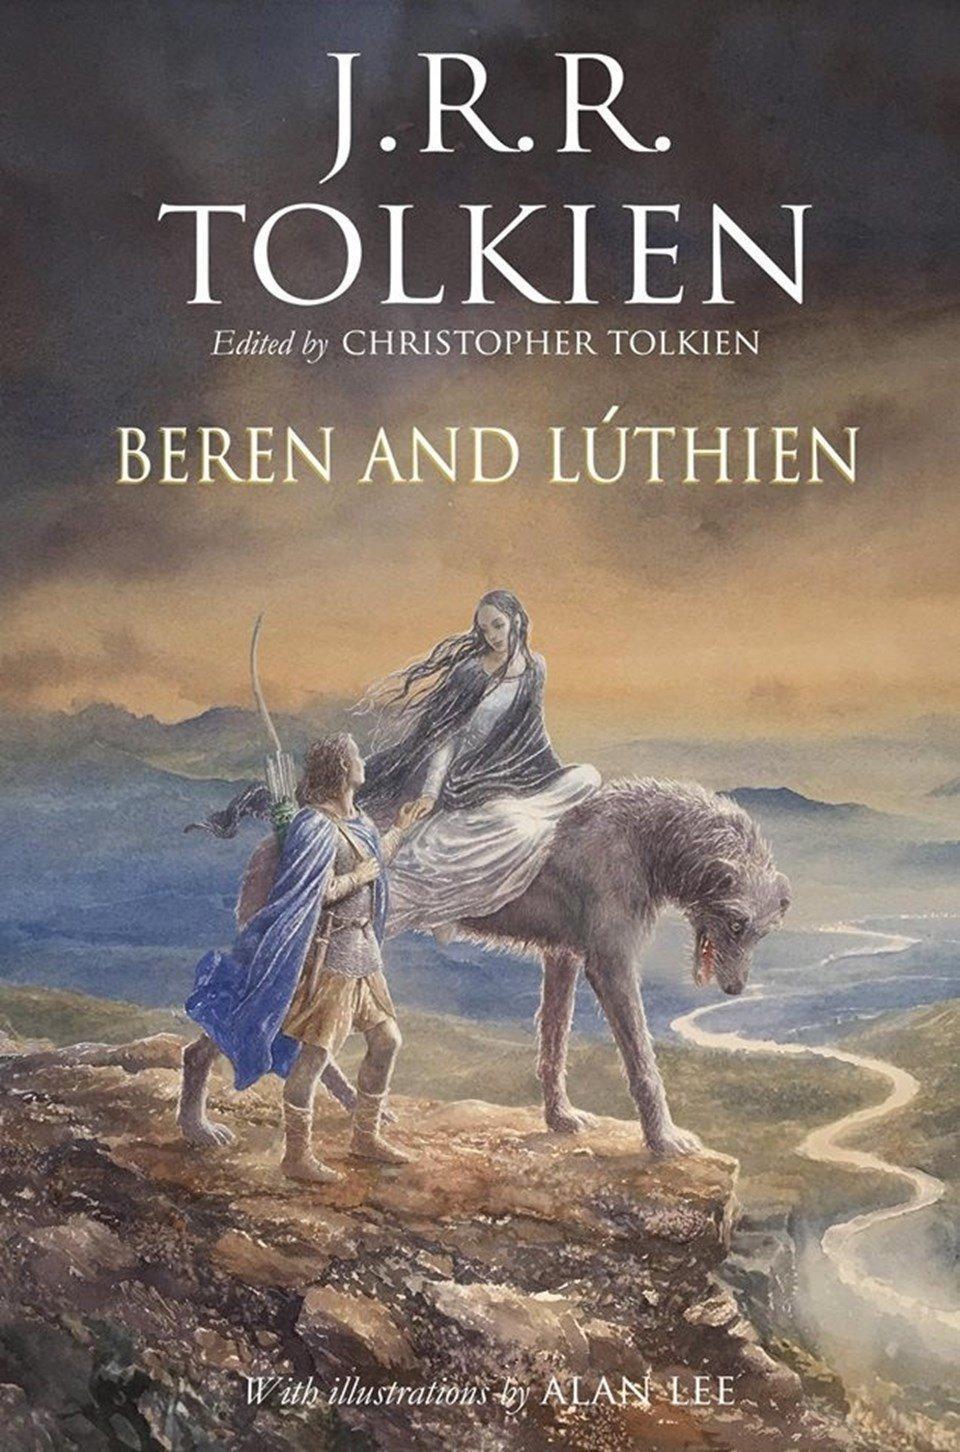 Yüzüklerin Efendisinin yazarı Tolkienden 100 yıl sonra yeni roman